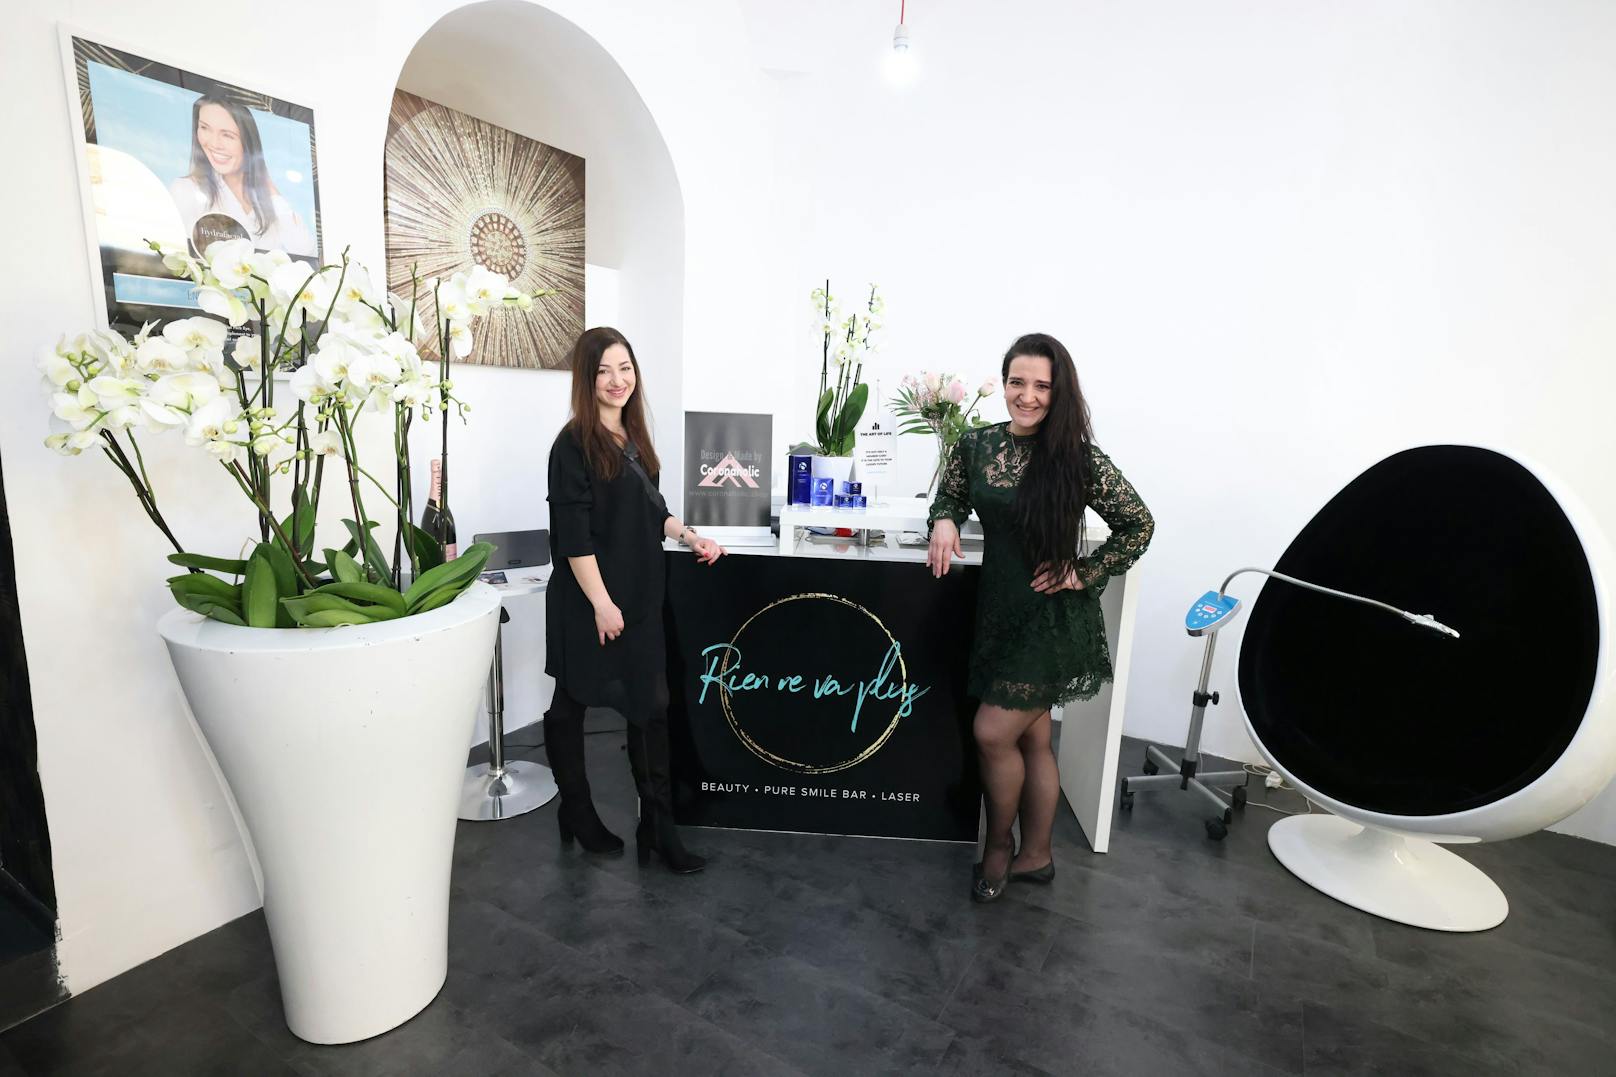 Anca Danacu und Ina Lechner (v.l.) führen den Beauty-Salon "Rien ne va plus Ästhetik" in der Wiener Weihburggasse im 1. Bezirk.